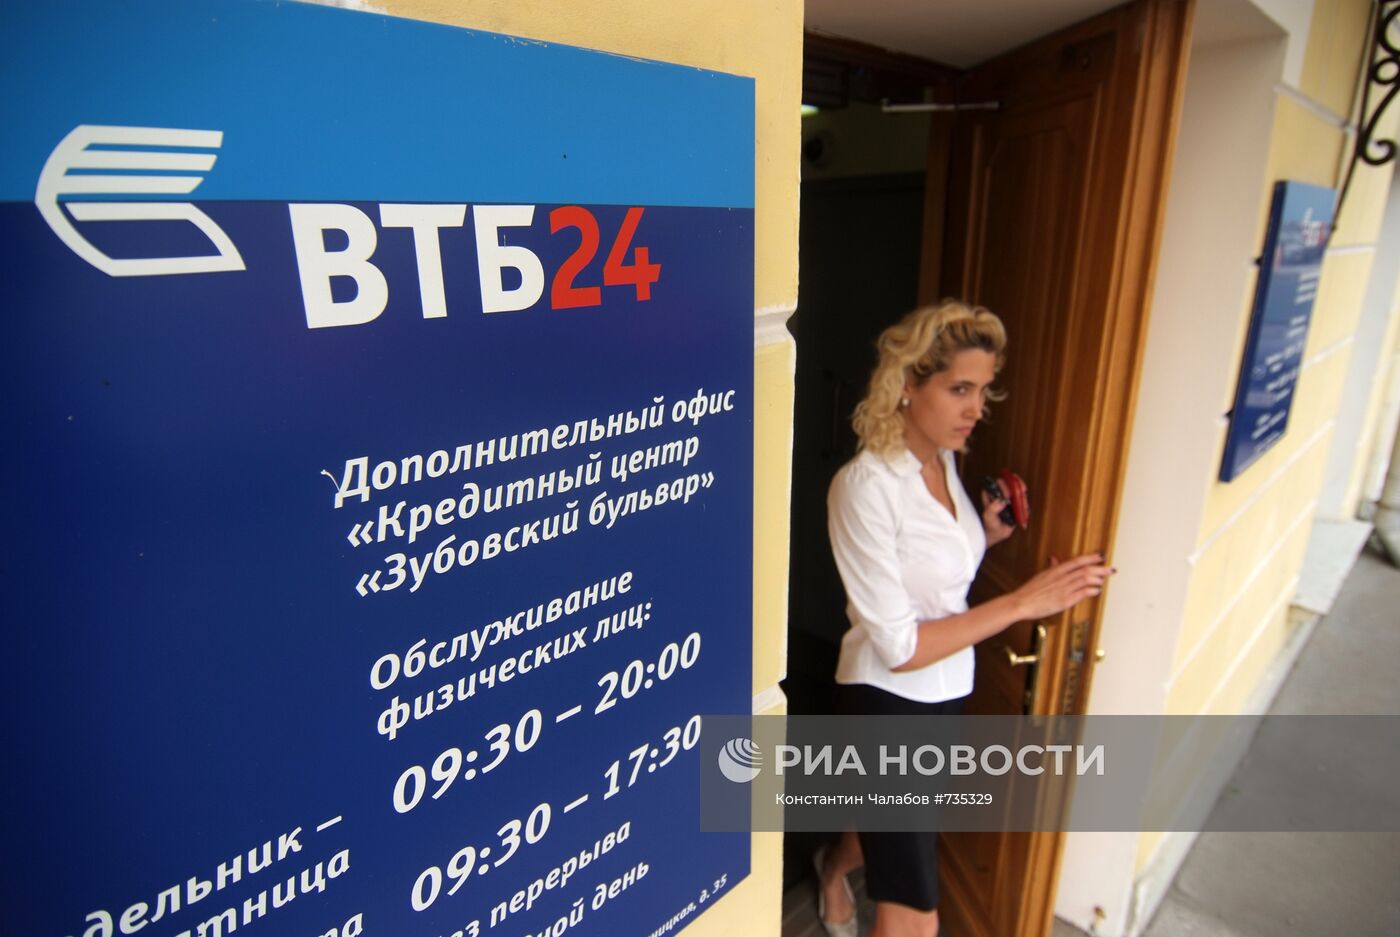 Вывеска банка "ВТБ-24"